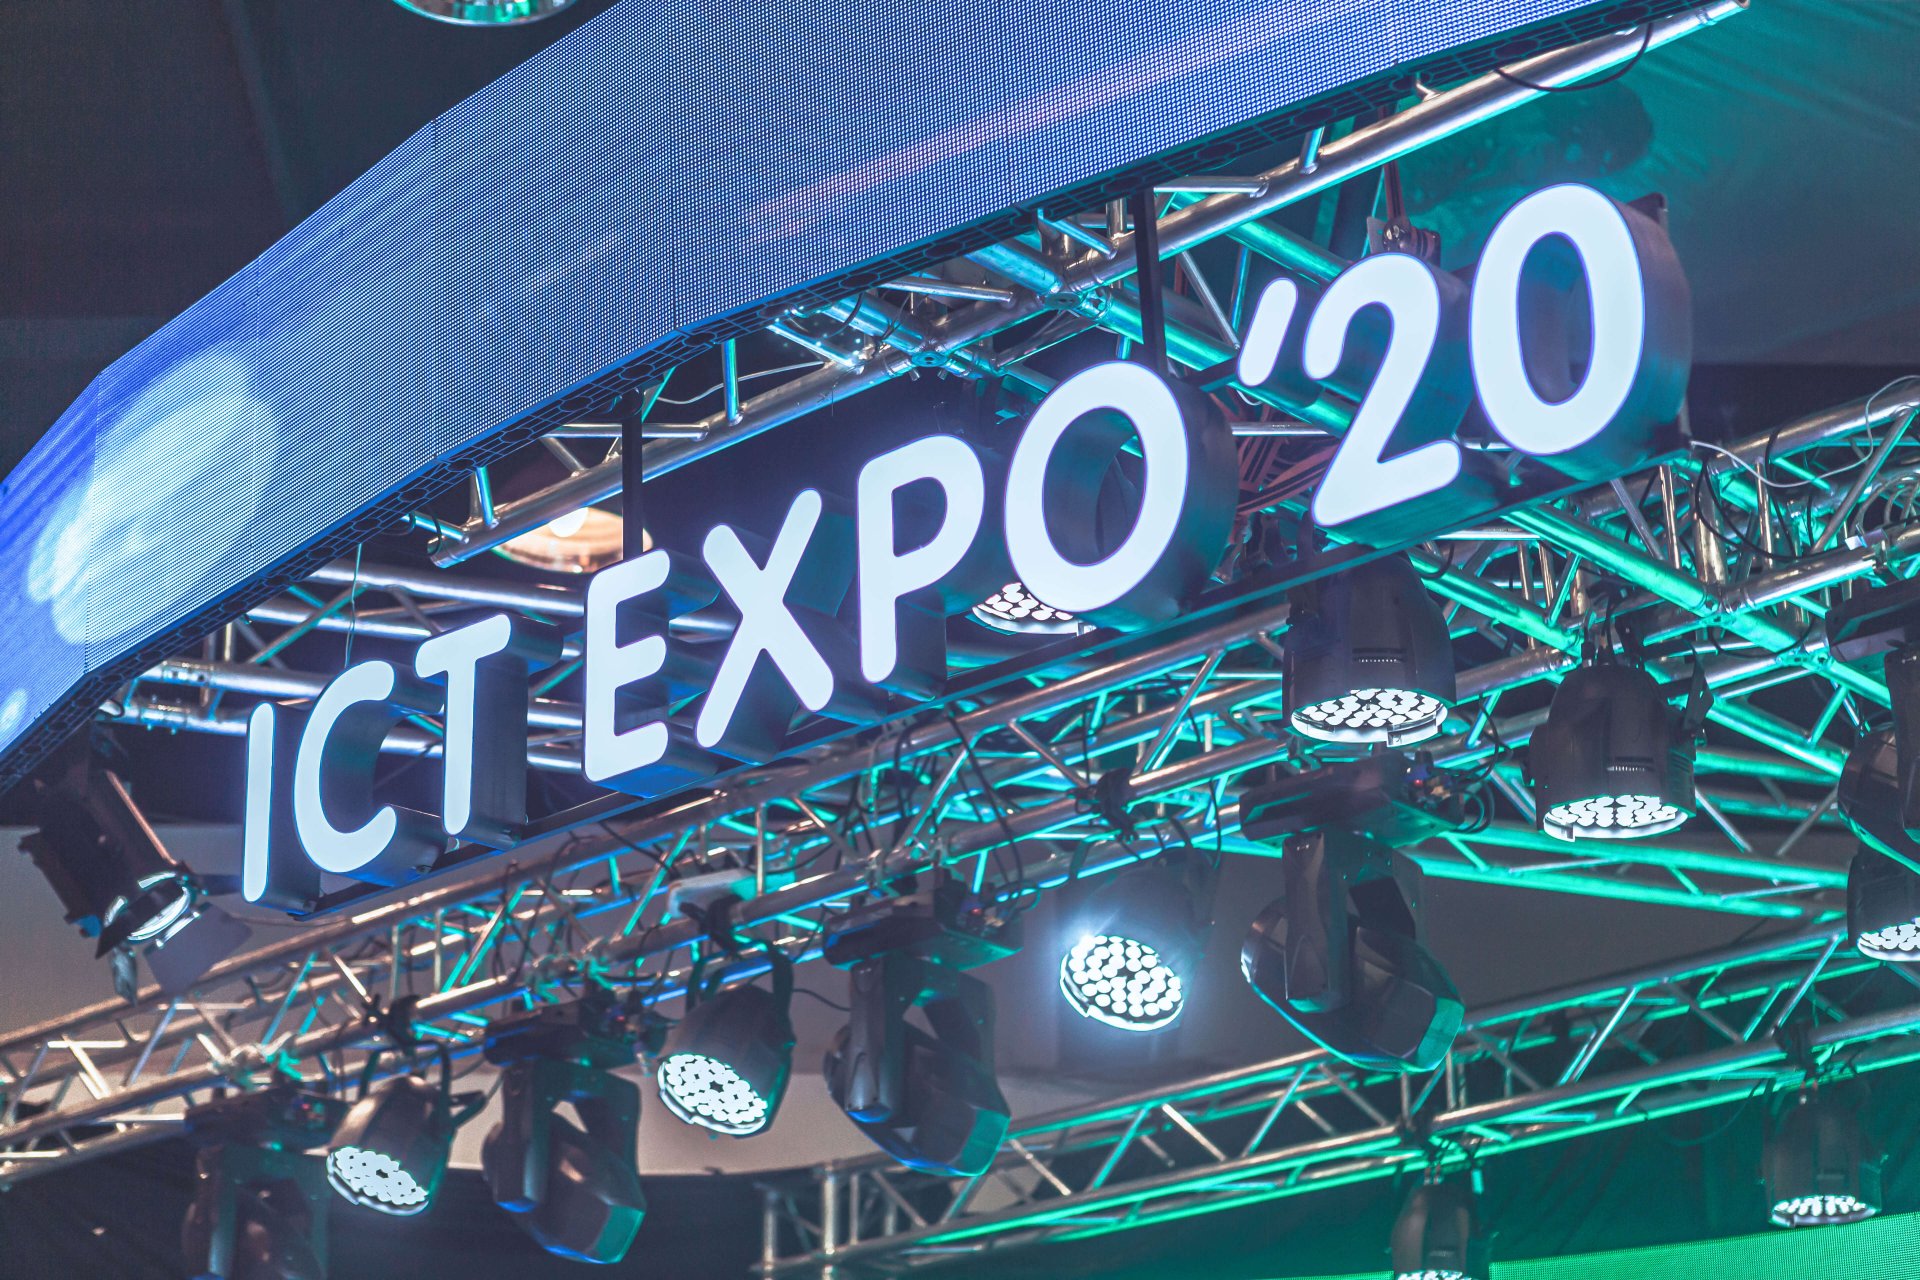 ICT Expo 2020